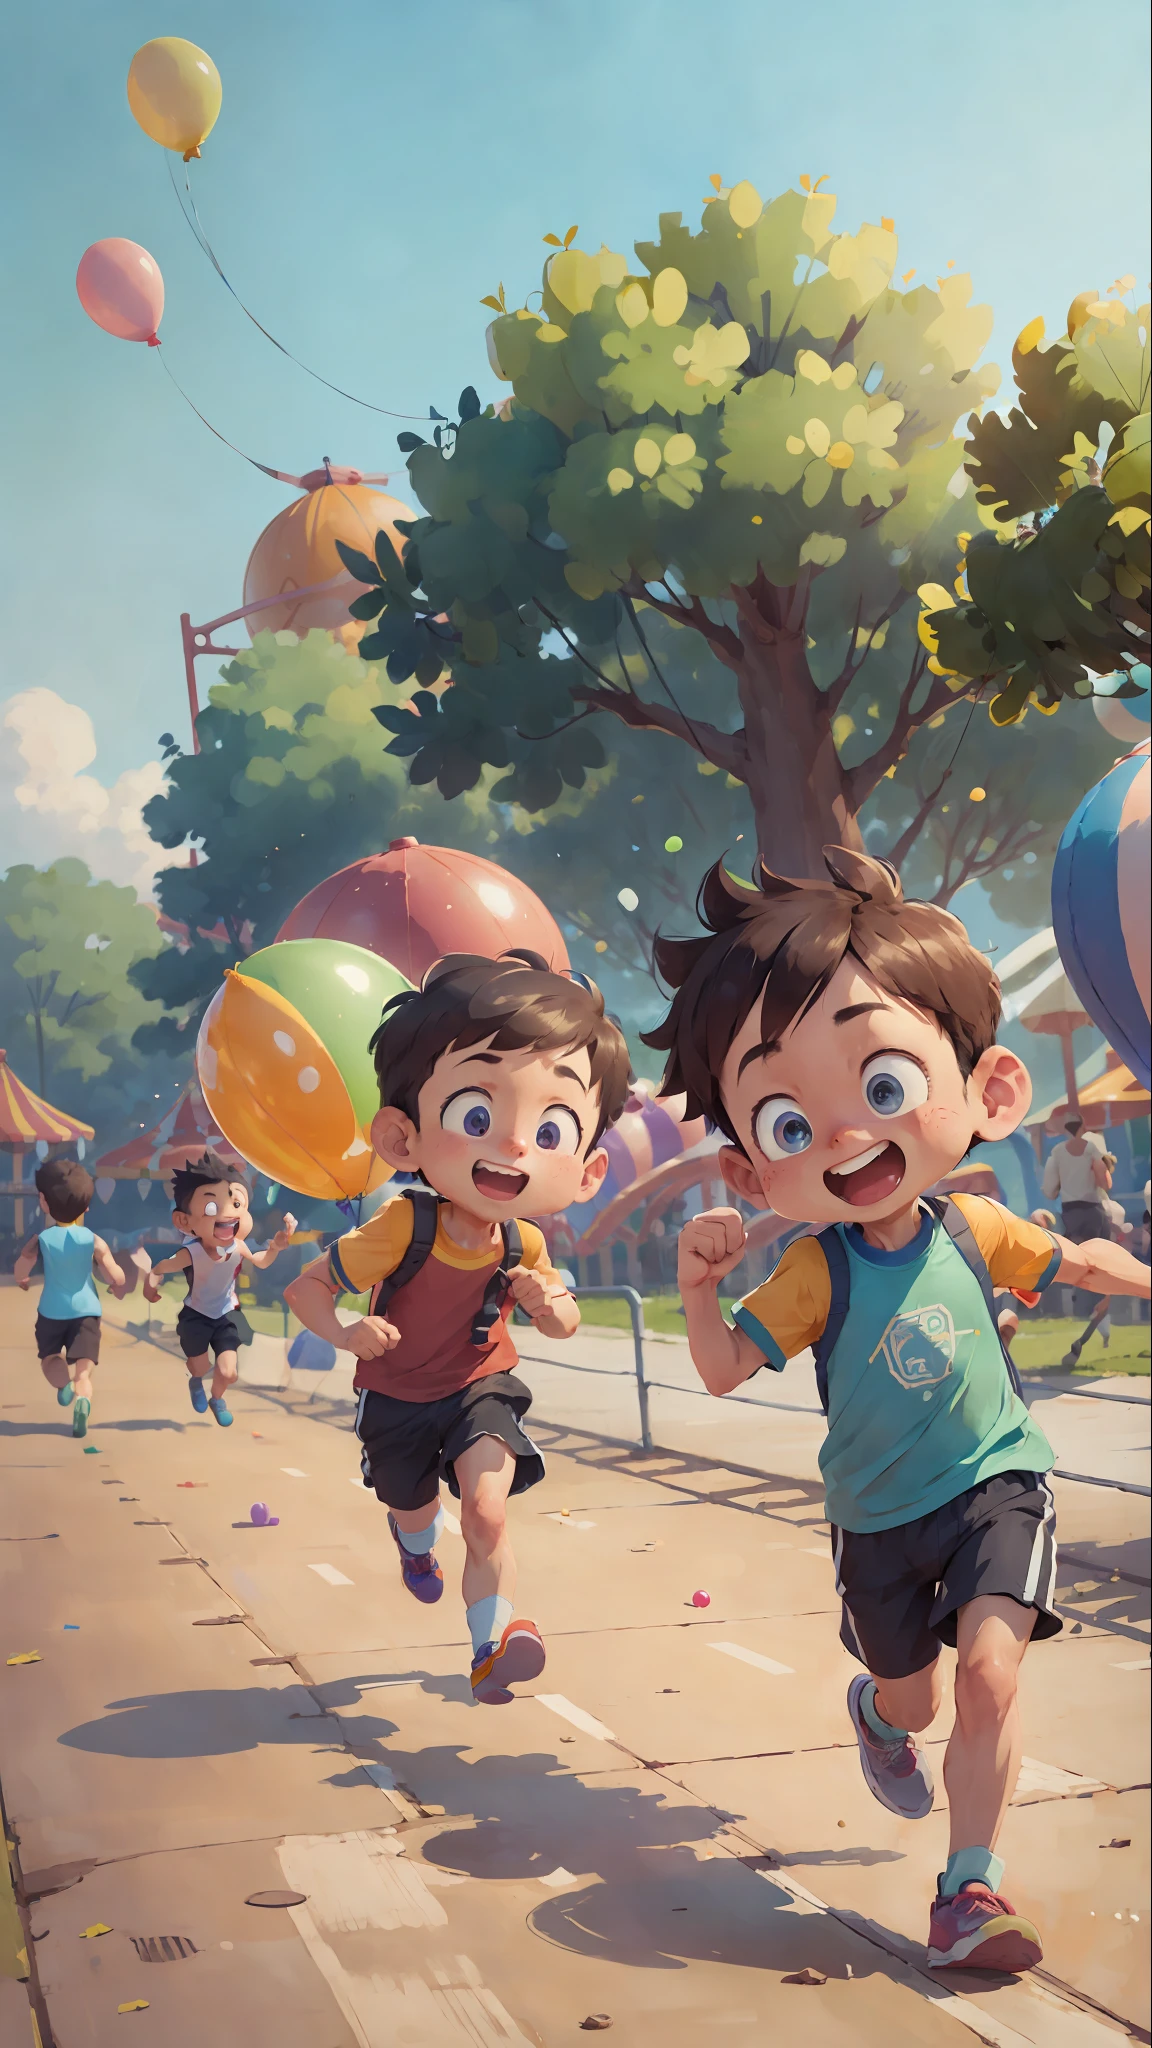 (SFW), 兩個奔跑的男孩, 游乐园, 拿著氣球, 快乐的, 快乐的, 完美品質, 明确重点, 丰富多彩的, 完美脸蛋, 复杂的细节, 超低视角, 广角镜头--v 6